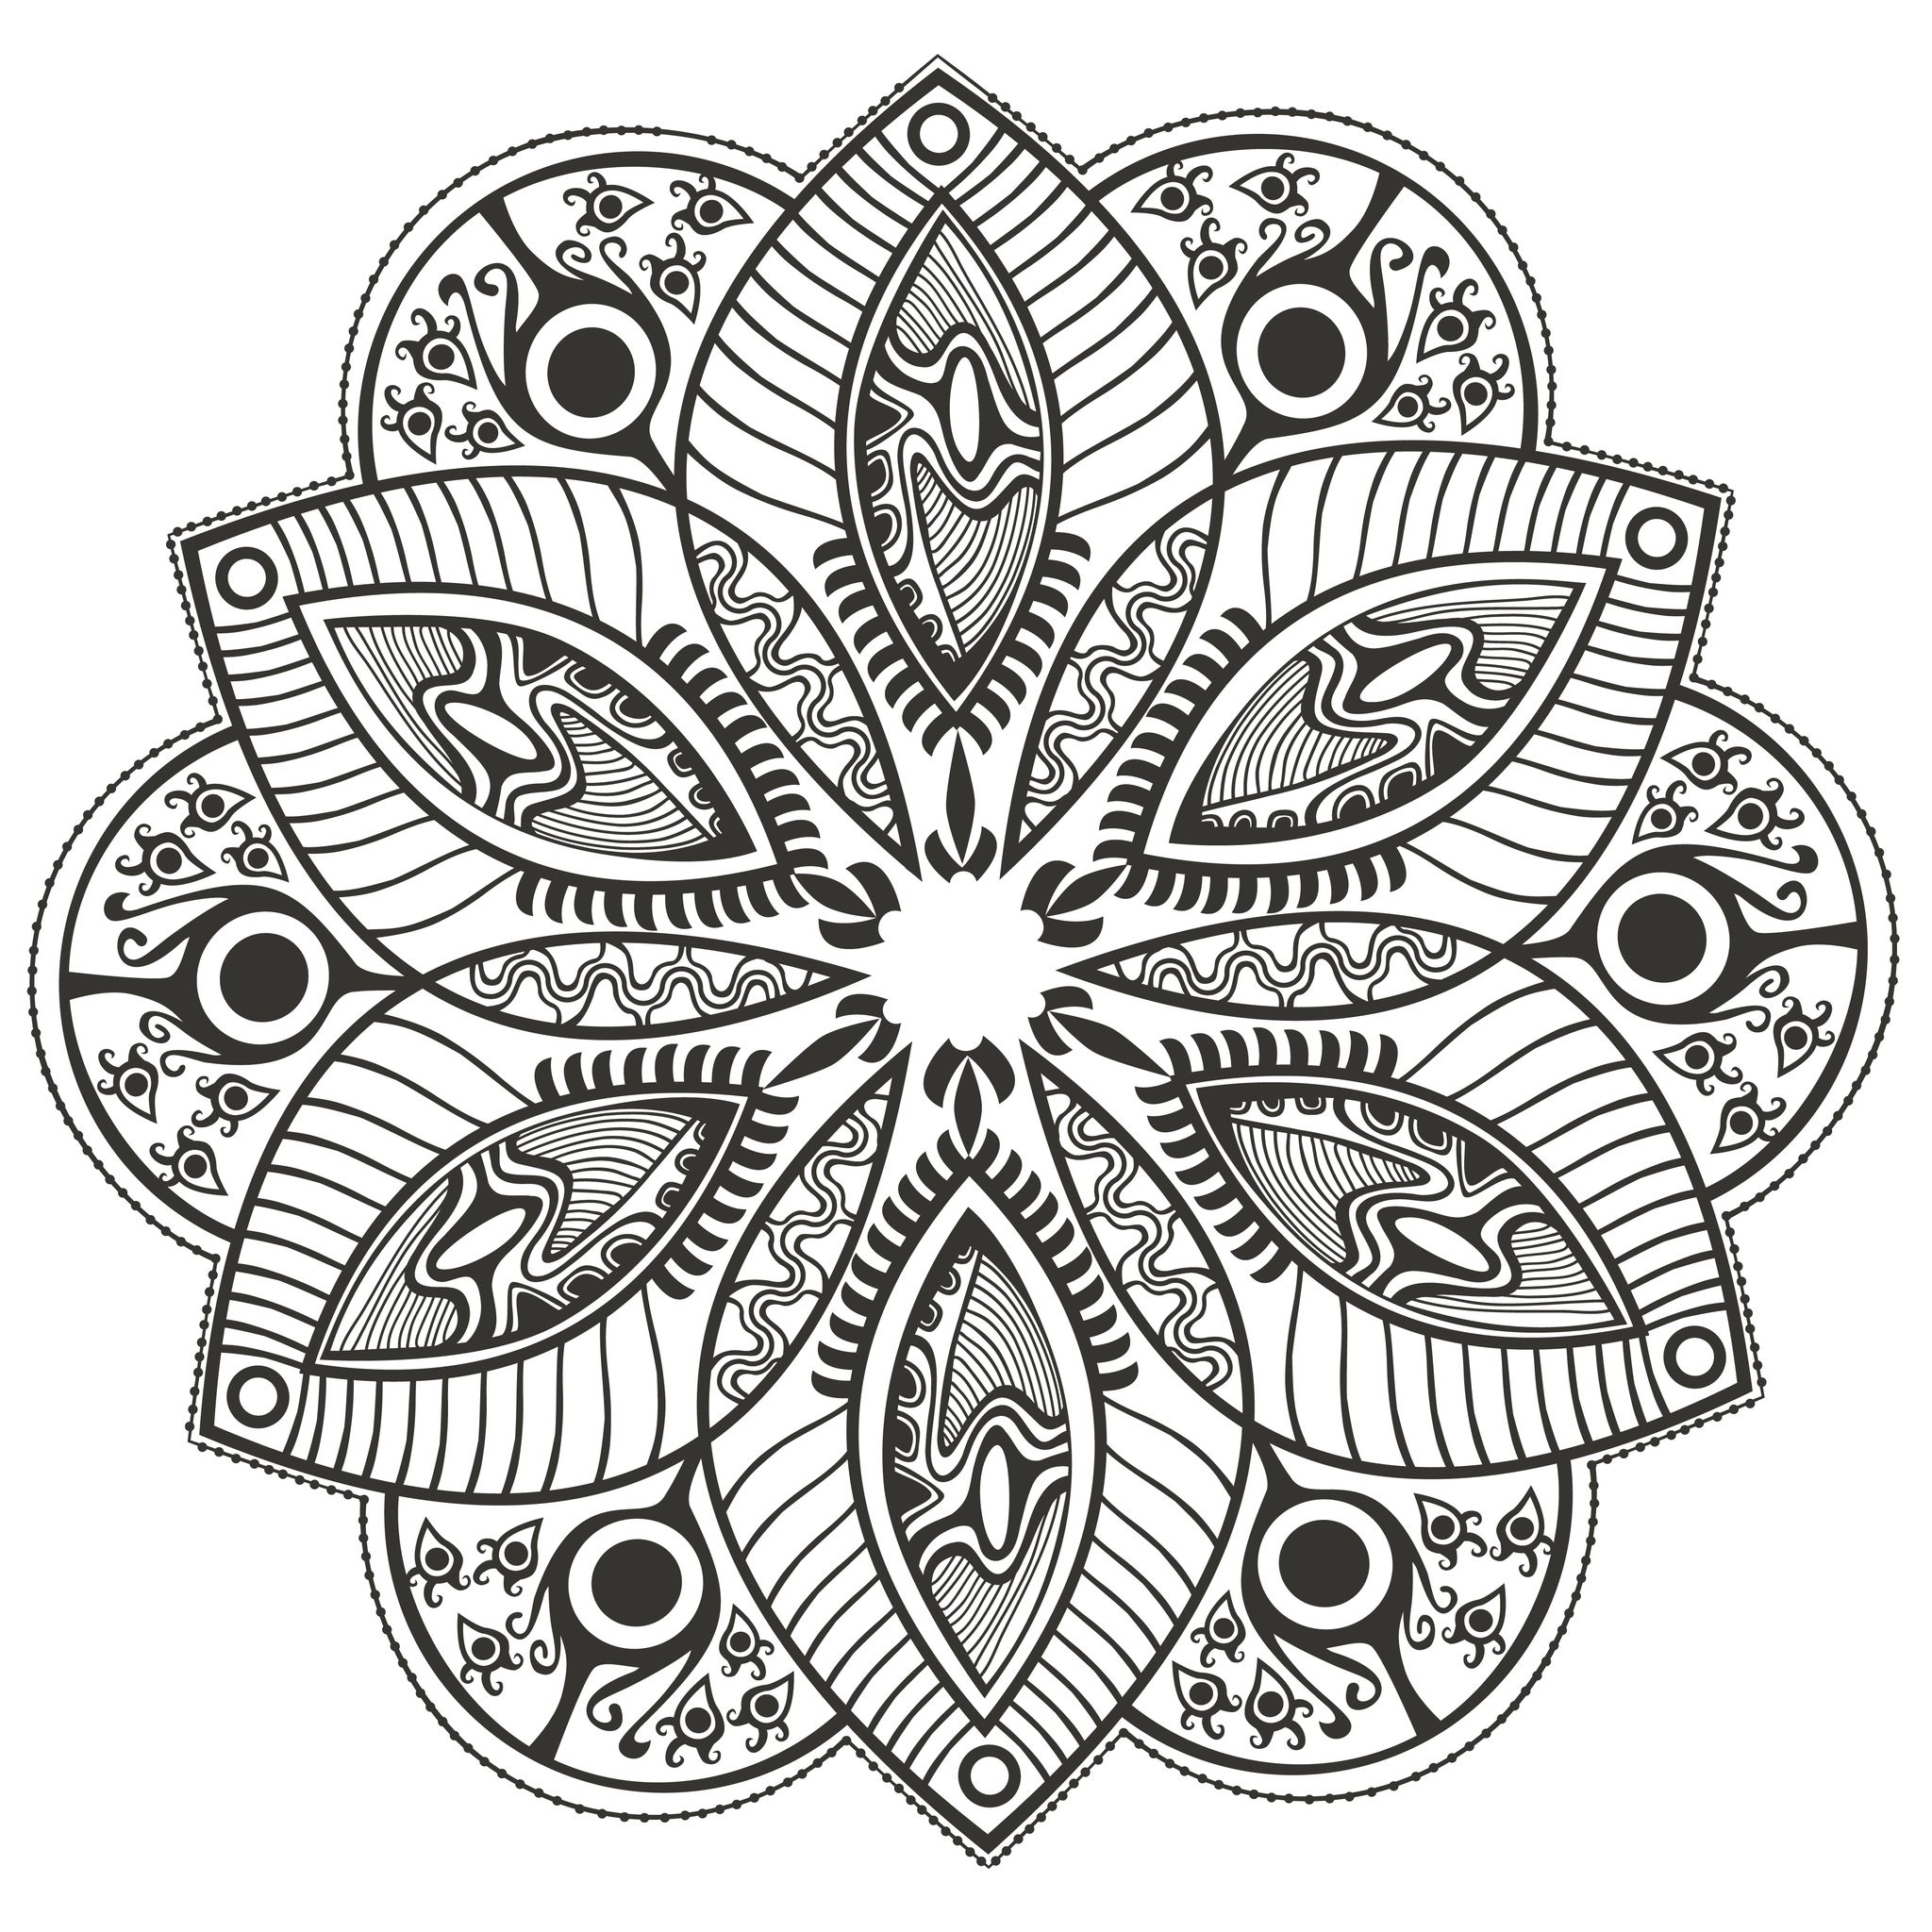 Very original Mandala coloring page, Artist : Markovka   Source : 123rf